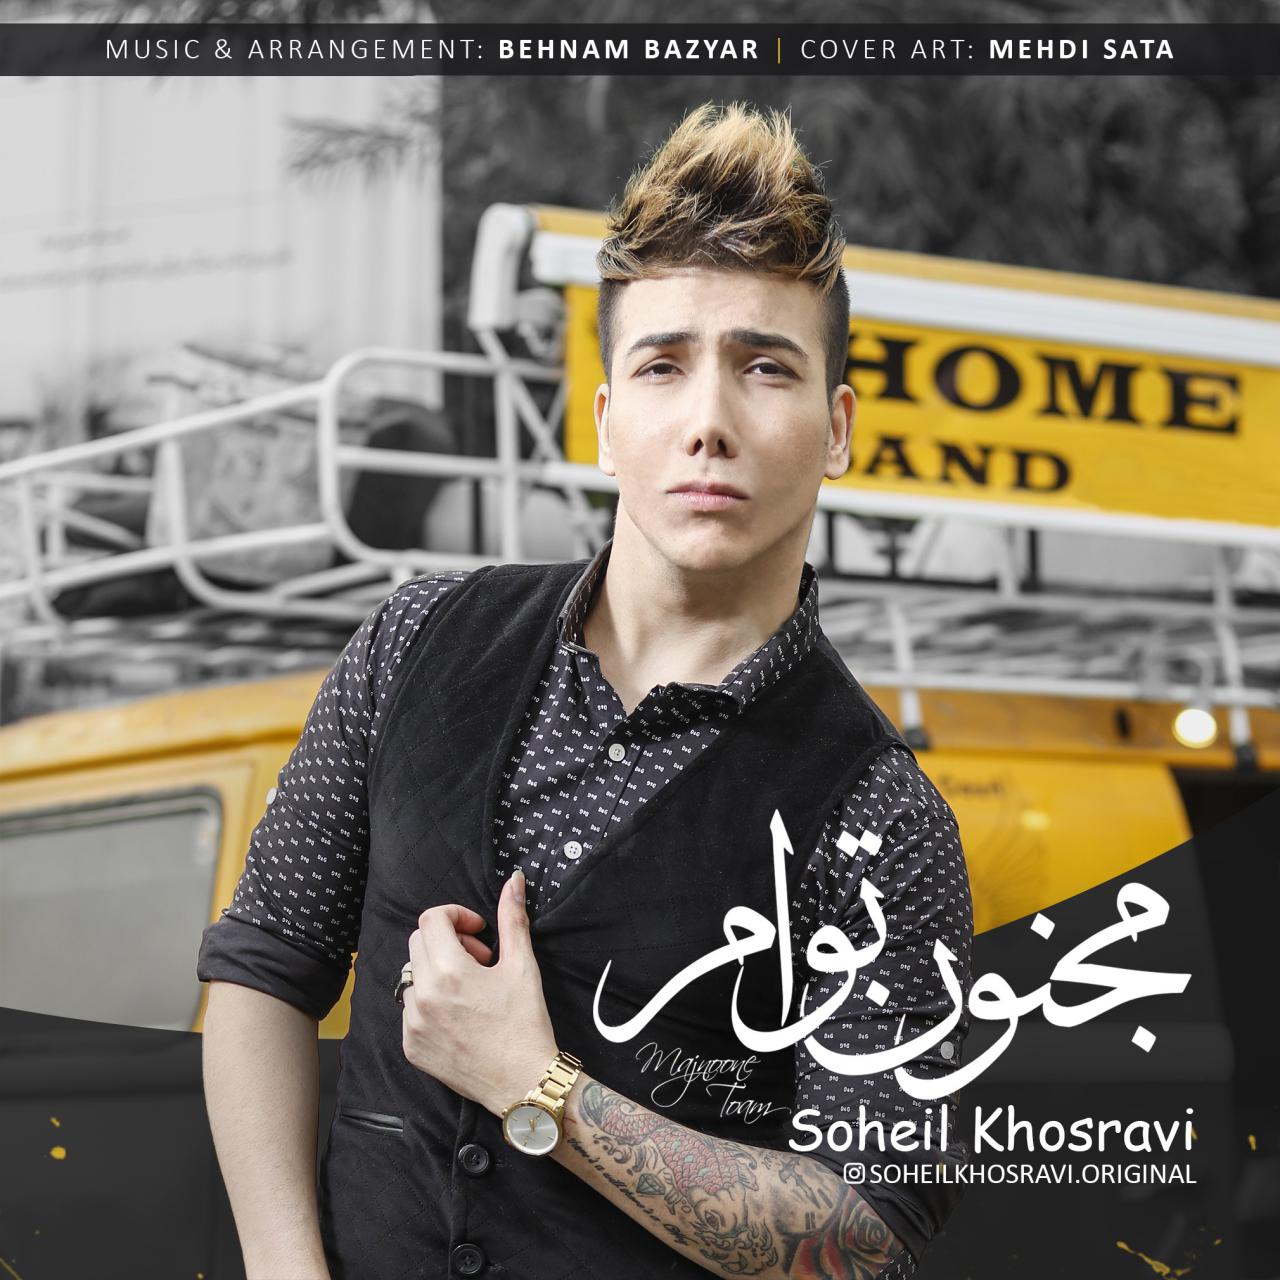  دانلود آهنگ جدید سهیل خسروی - مجنون توام | Download New Music By Soheil Khosravi - Majnoone Toam